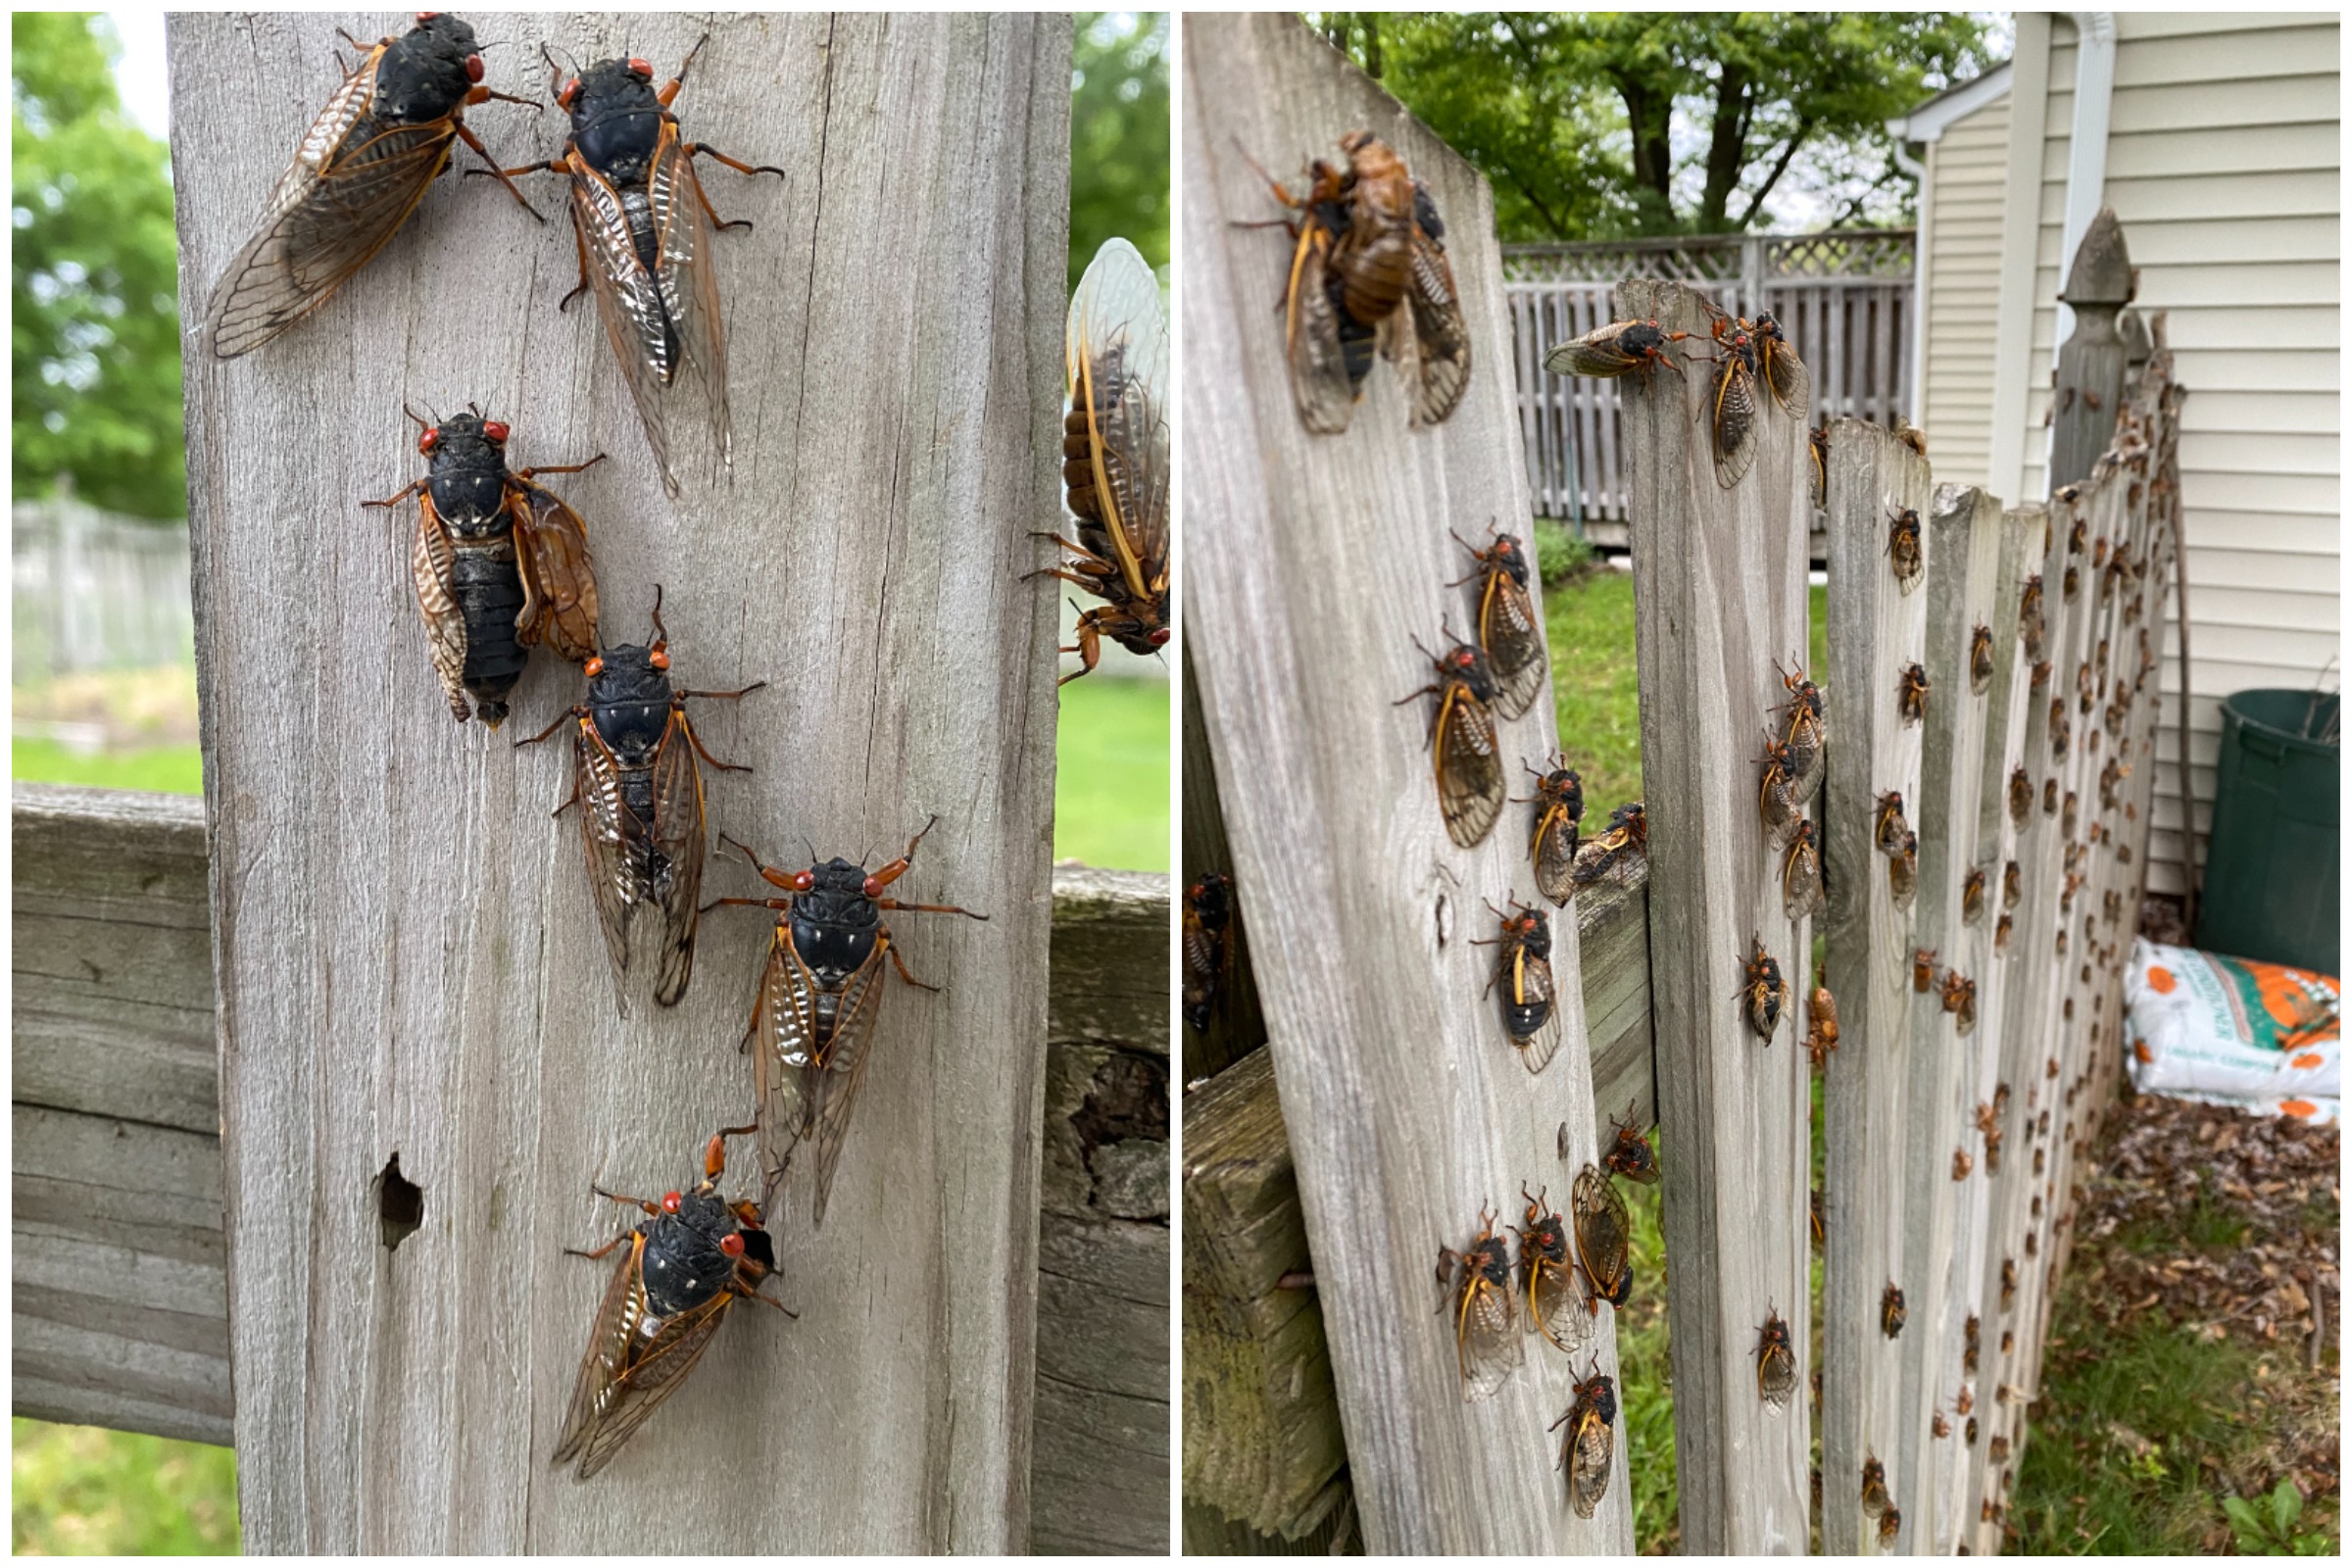 Videos Show Cicadas Taking Over Virginia Man's Garden as Brood X